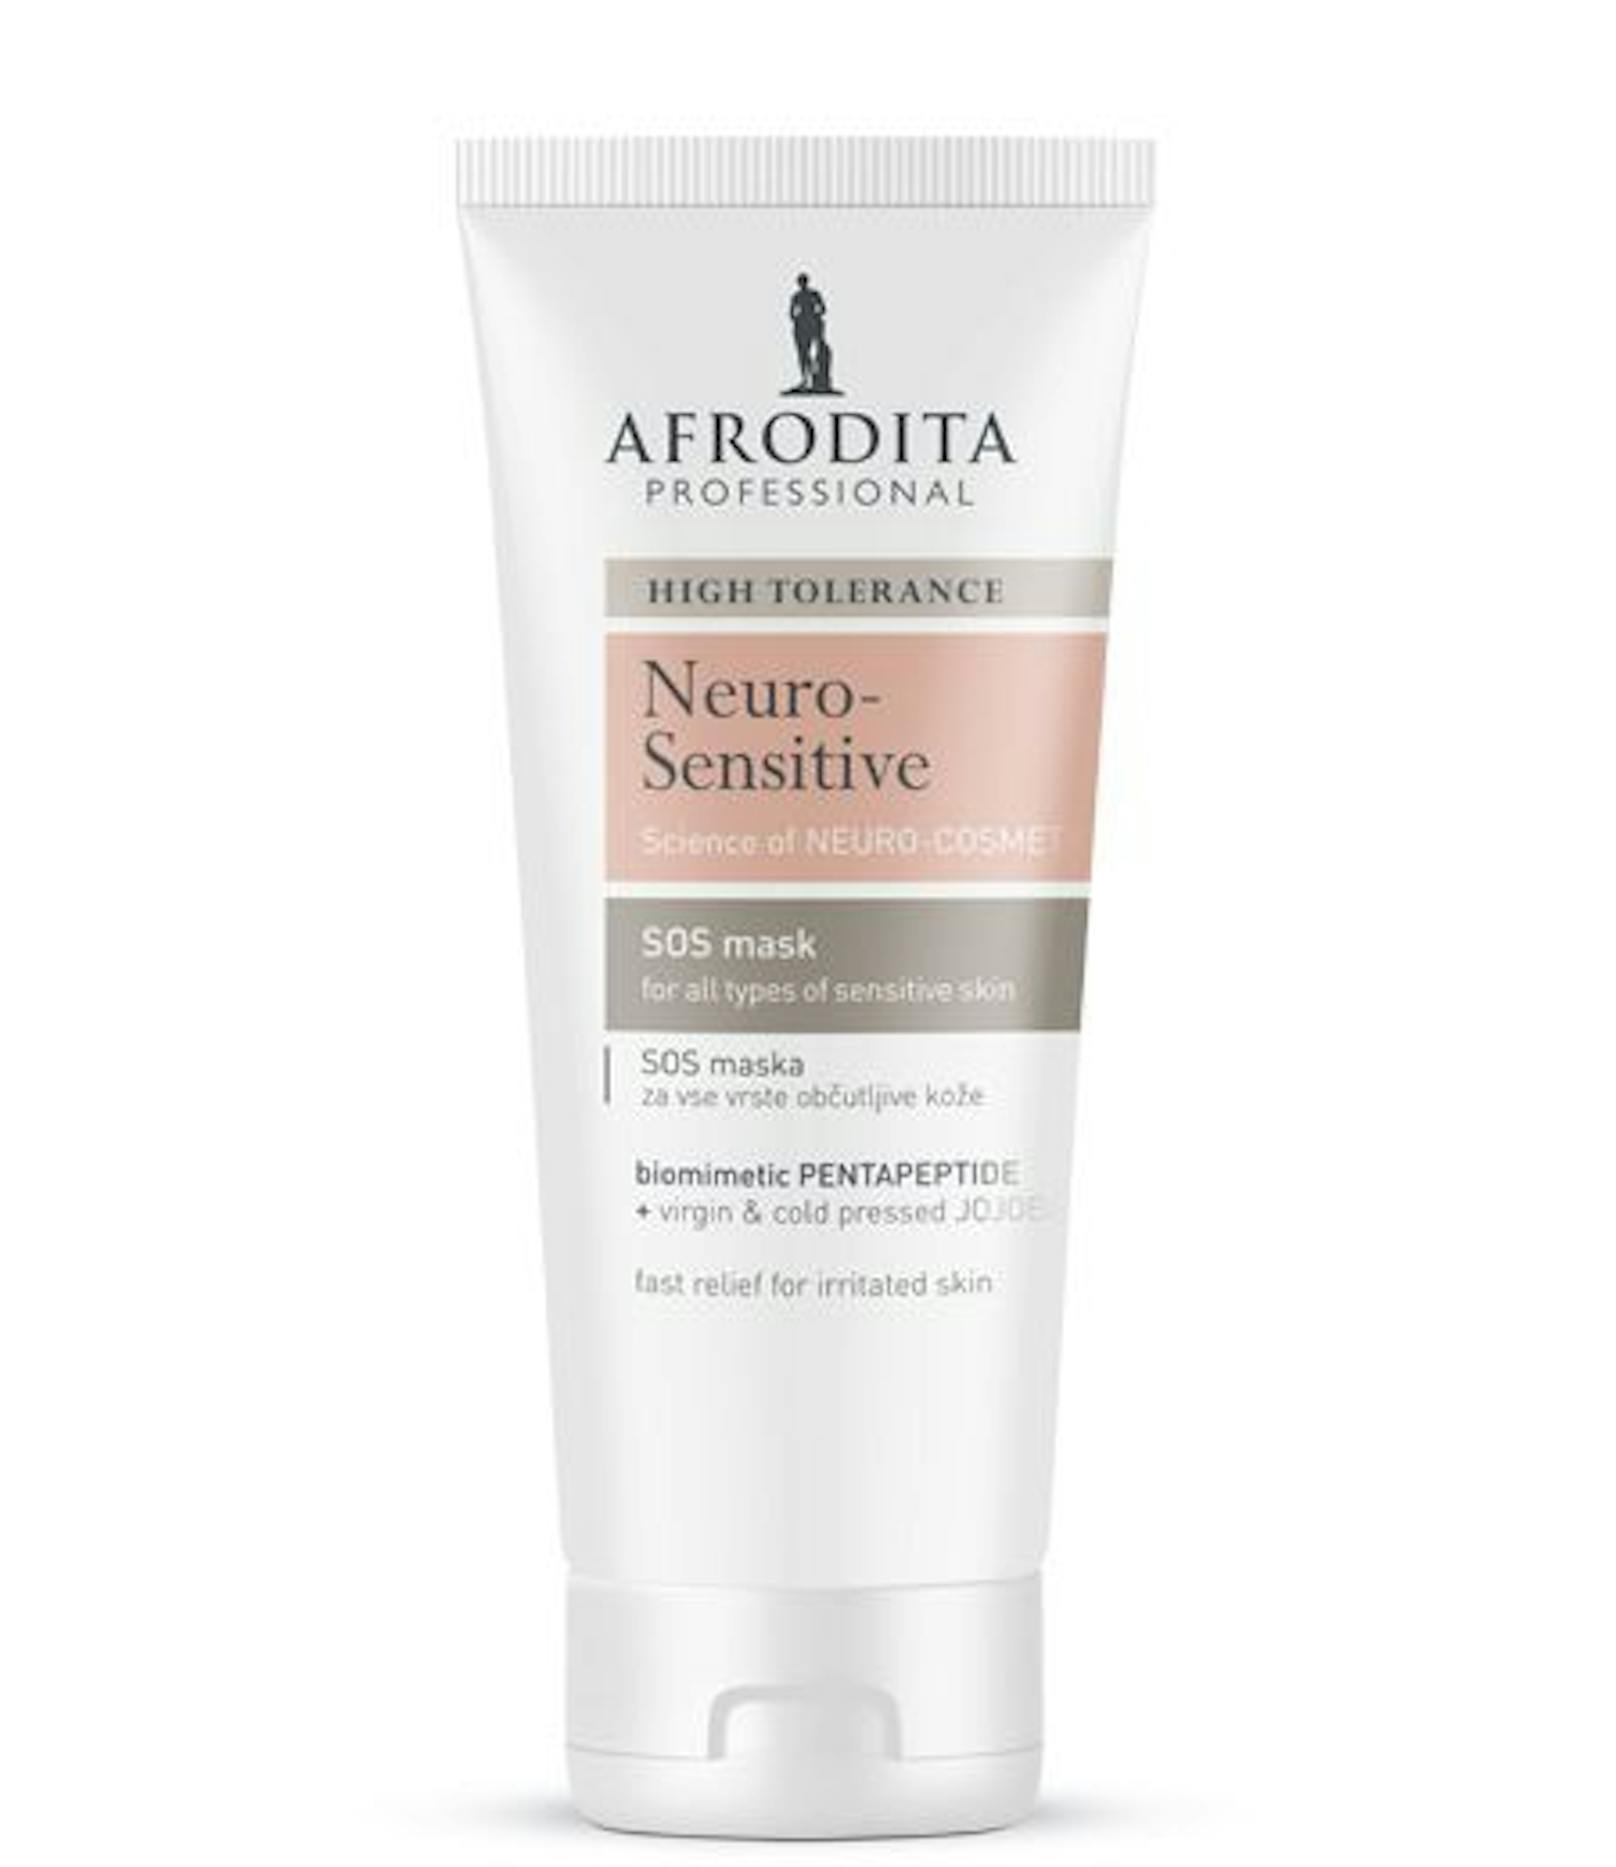 Die SOS-Maske für empfindliche Haut von Afrodita gibt es um 39,90 Euro zu kaufen. 